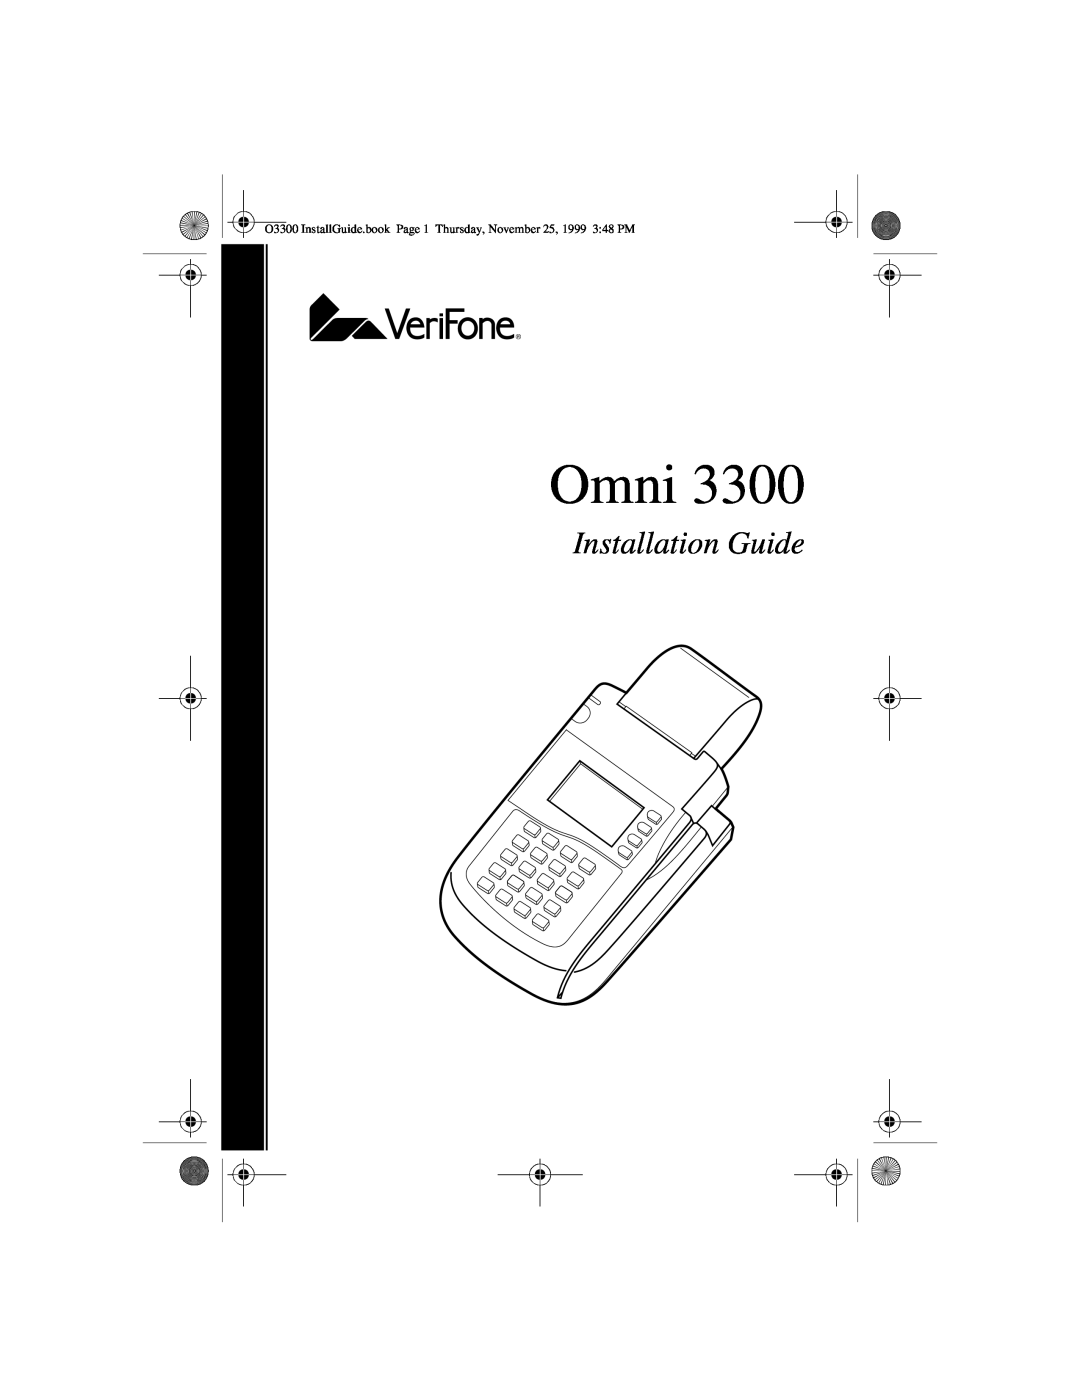 VeriFone 3300 manual Omni, Installation Guide 